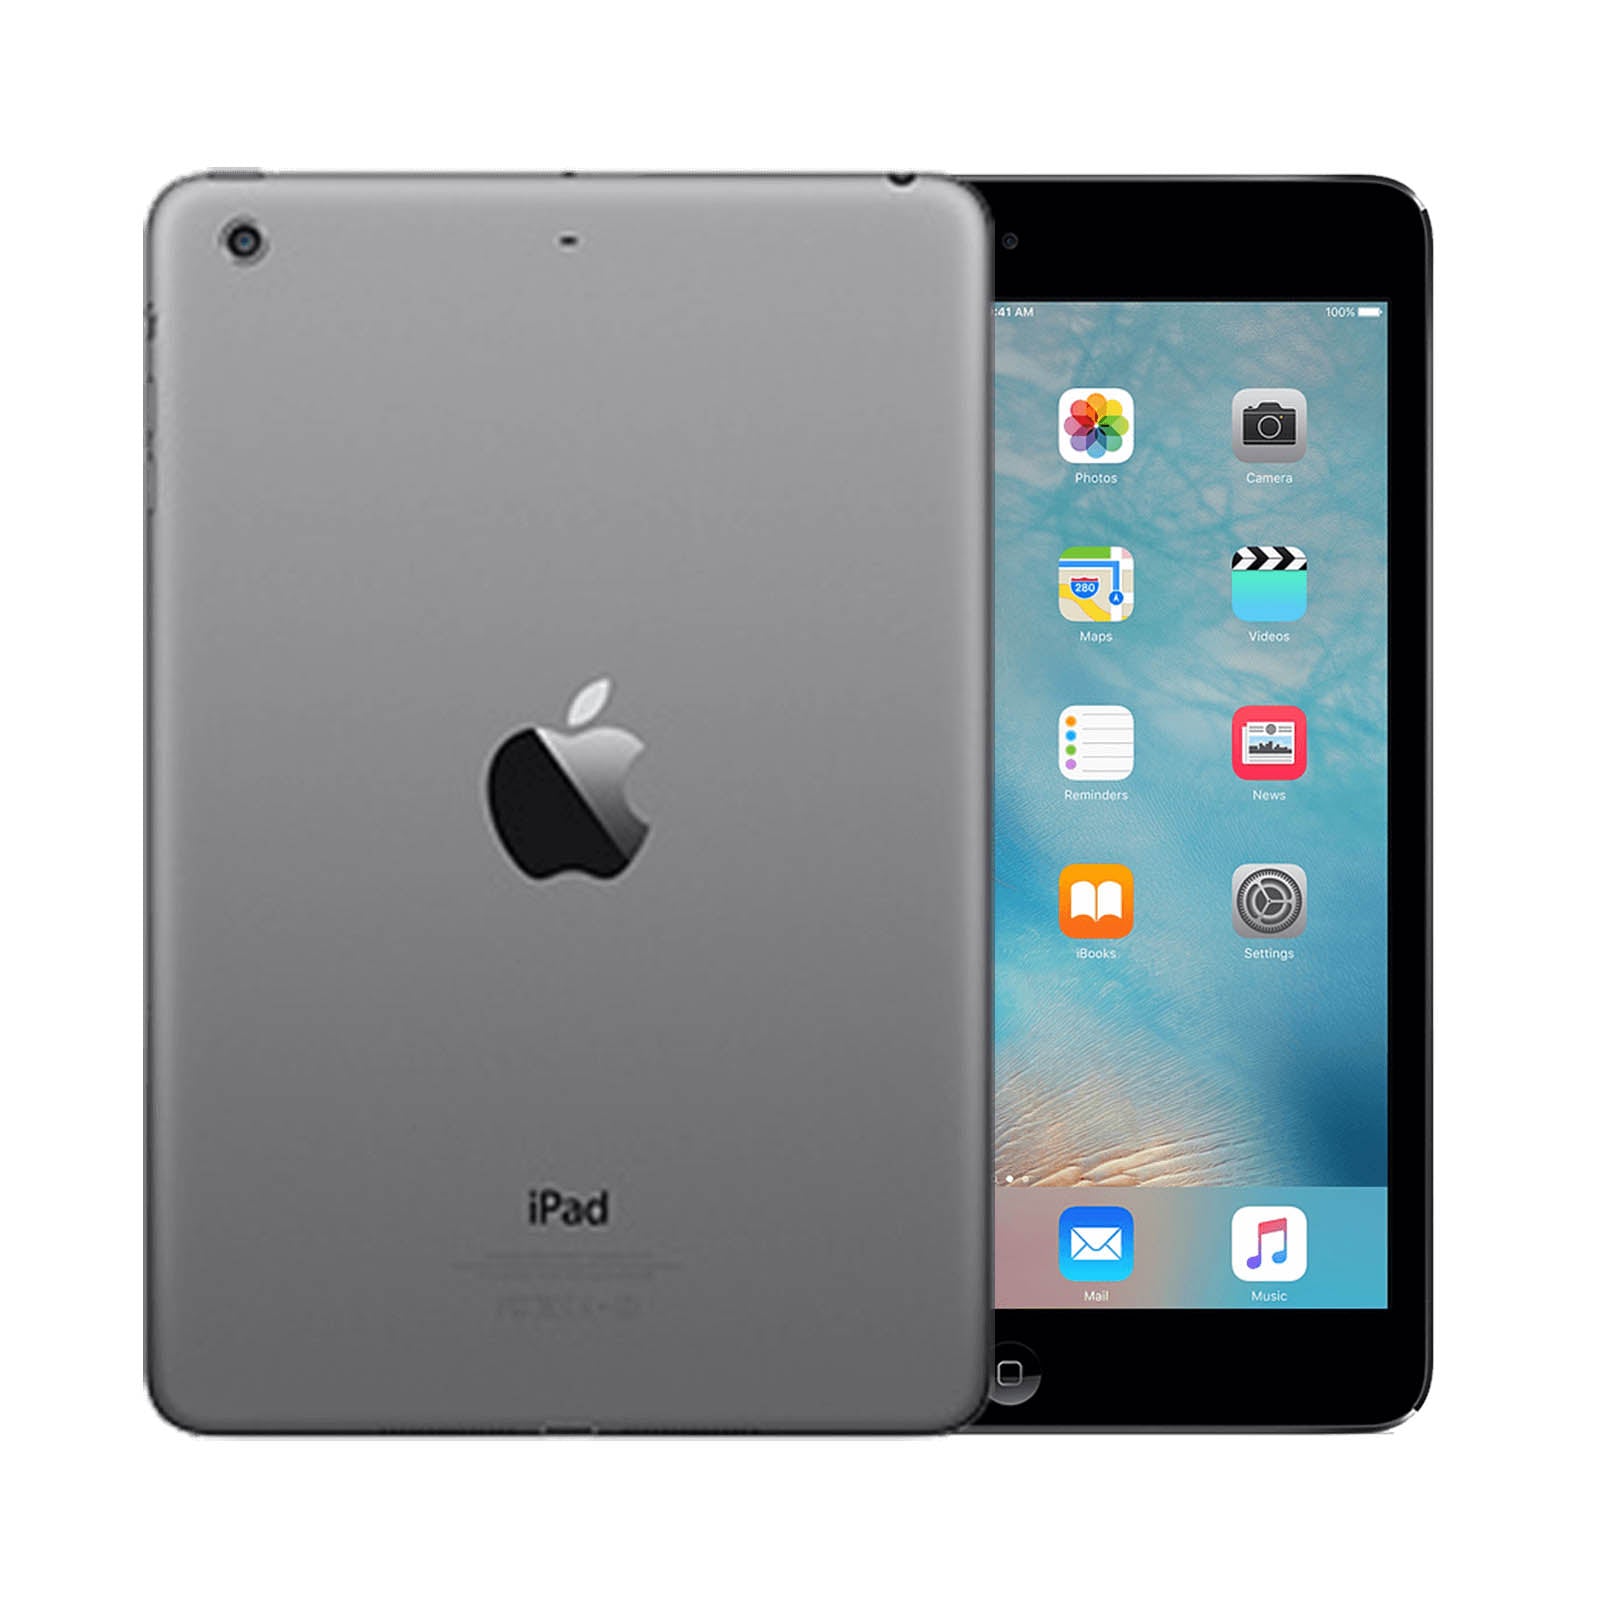 Apple iPad mini 2 64GB Black Very Good - Unlocked